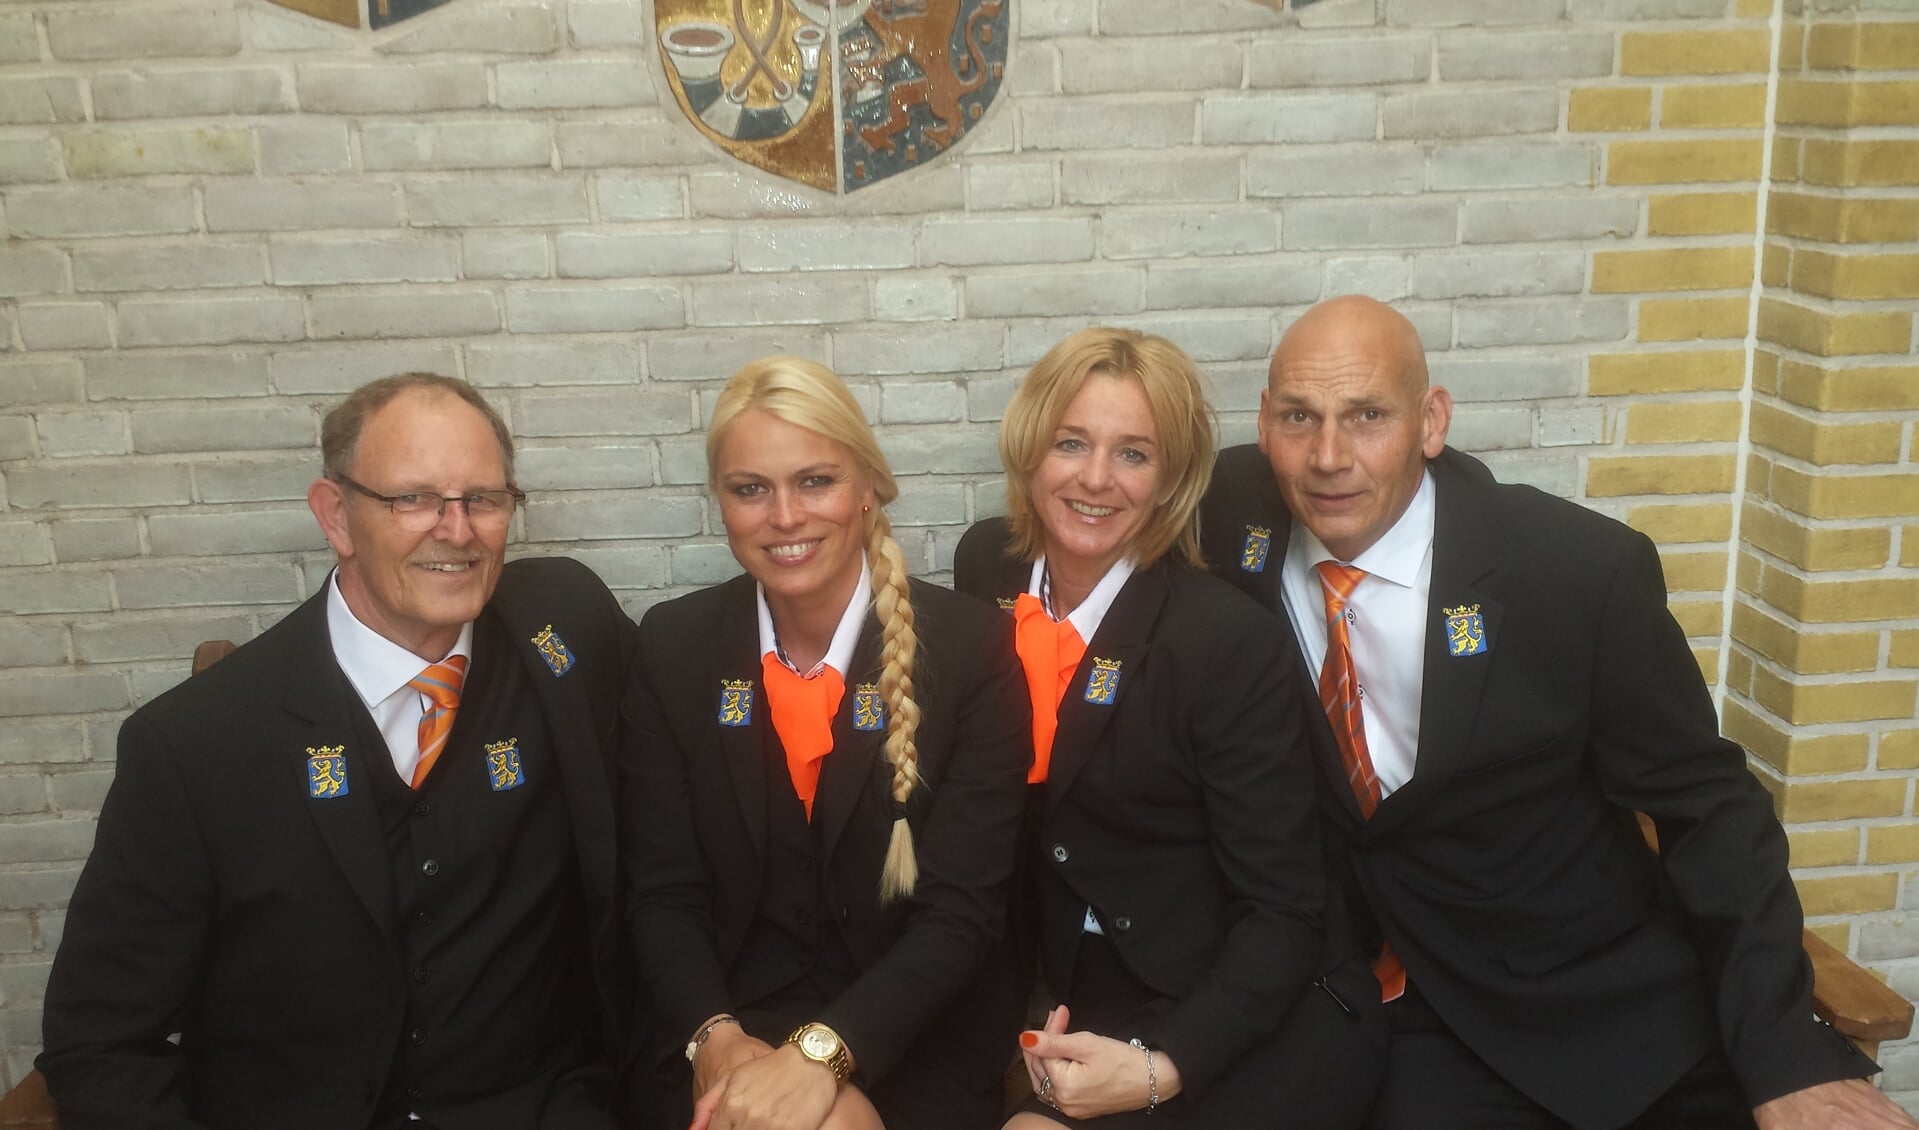 De bodes op Koningsdag 2015 met vlnr: René van Houten, Anne Ketelaar, Francien Koppert en Louis vd Berg.| Foto: pr